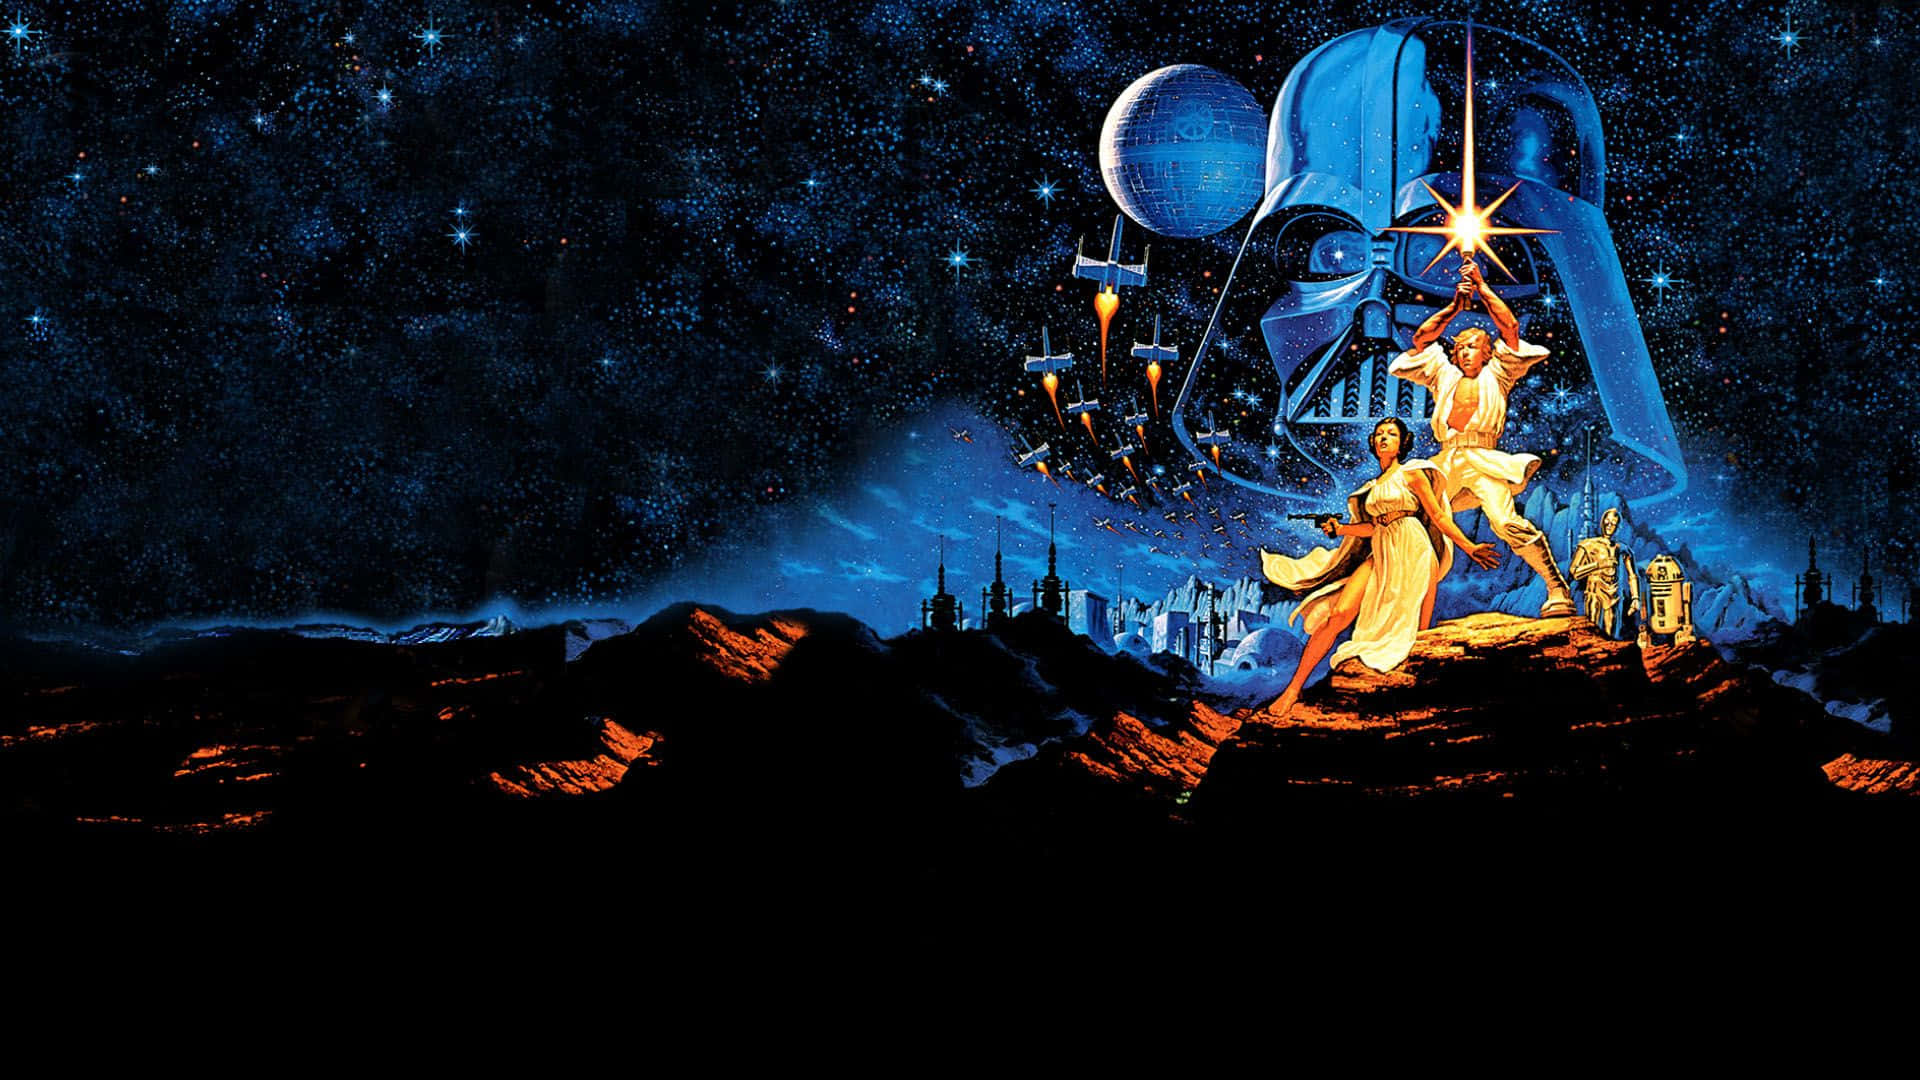 Impresionanteescena De Batalla De Star Wars Que Presenta Emblemáticas Naves Espaciales En Una Confrontación Cósmica.